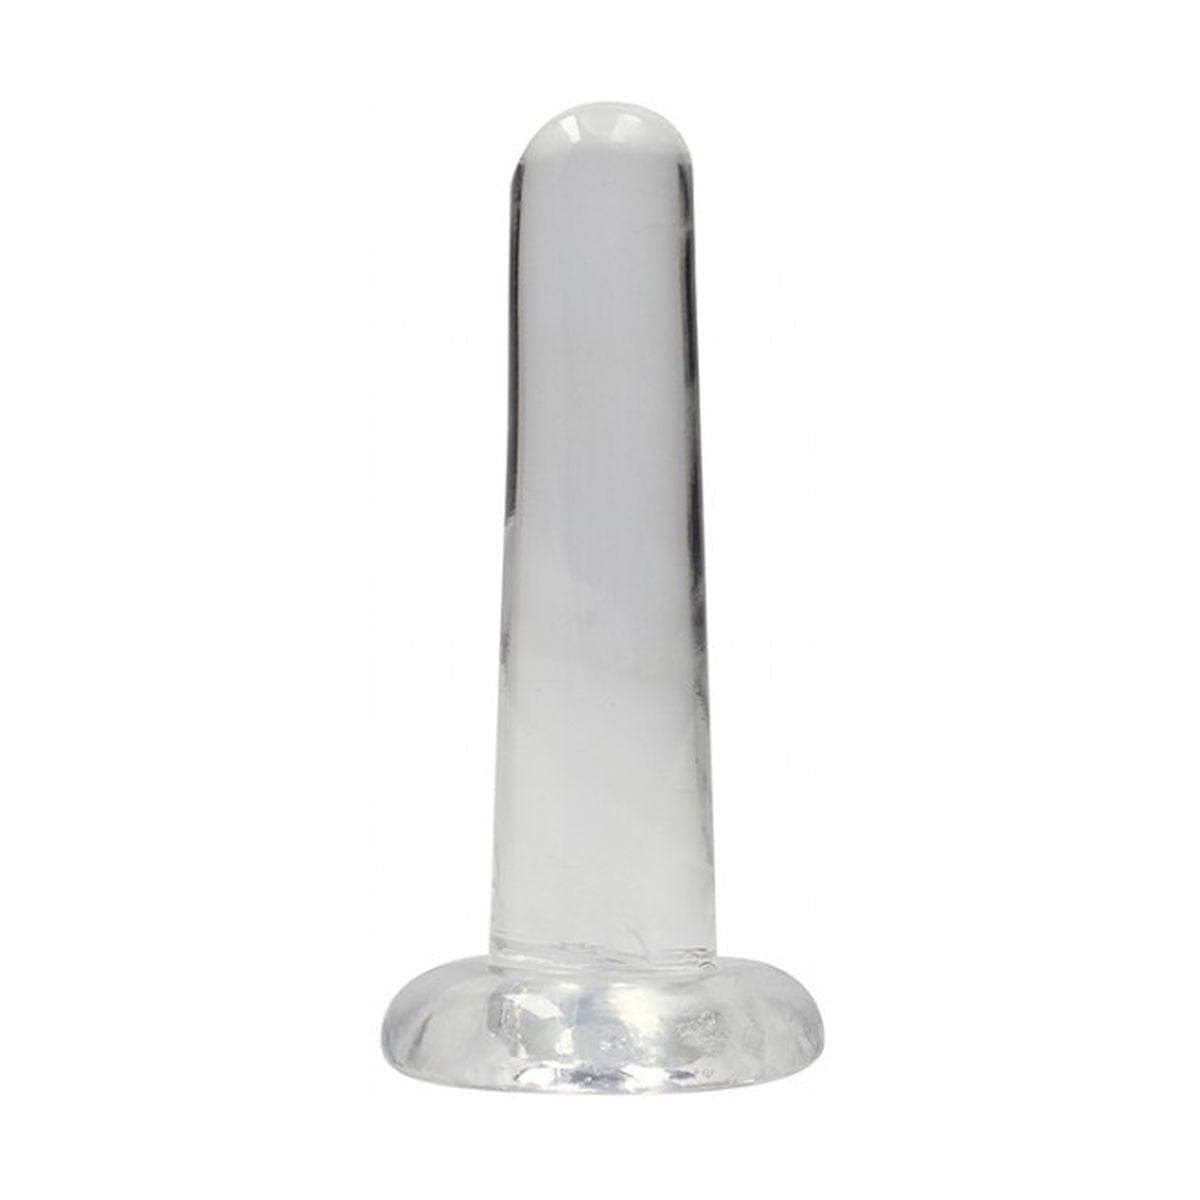 Dildo RealRock Liso Crystal Clear, 13.5cm Ø3cm